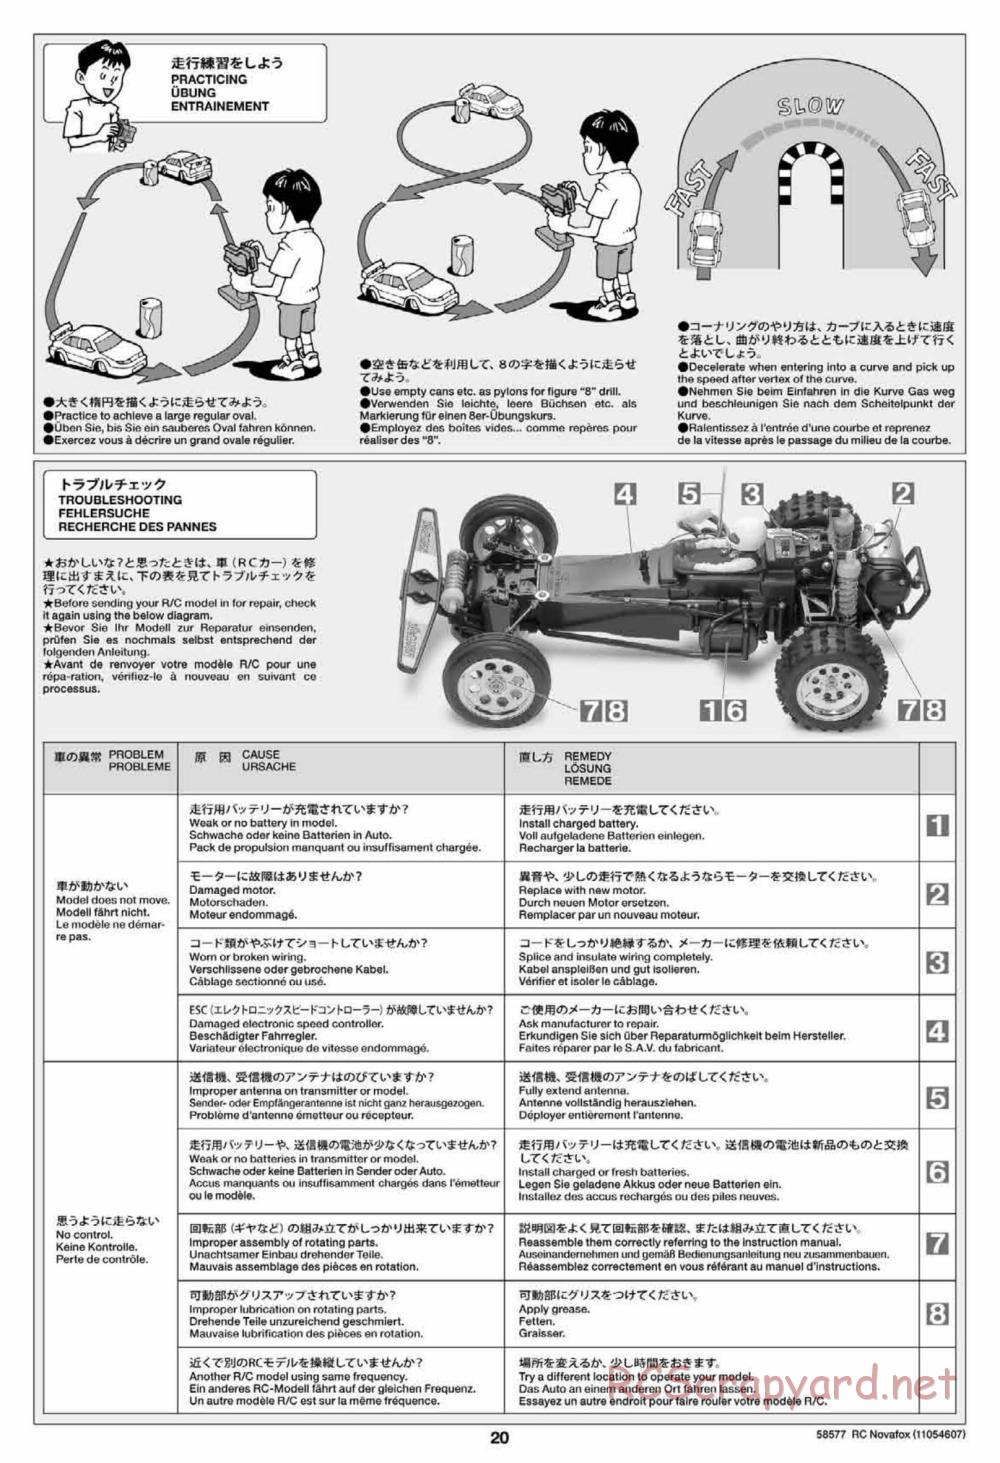 Tamiya - Novafox Chassis - Manual - Page 20